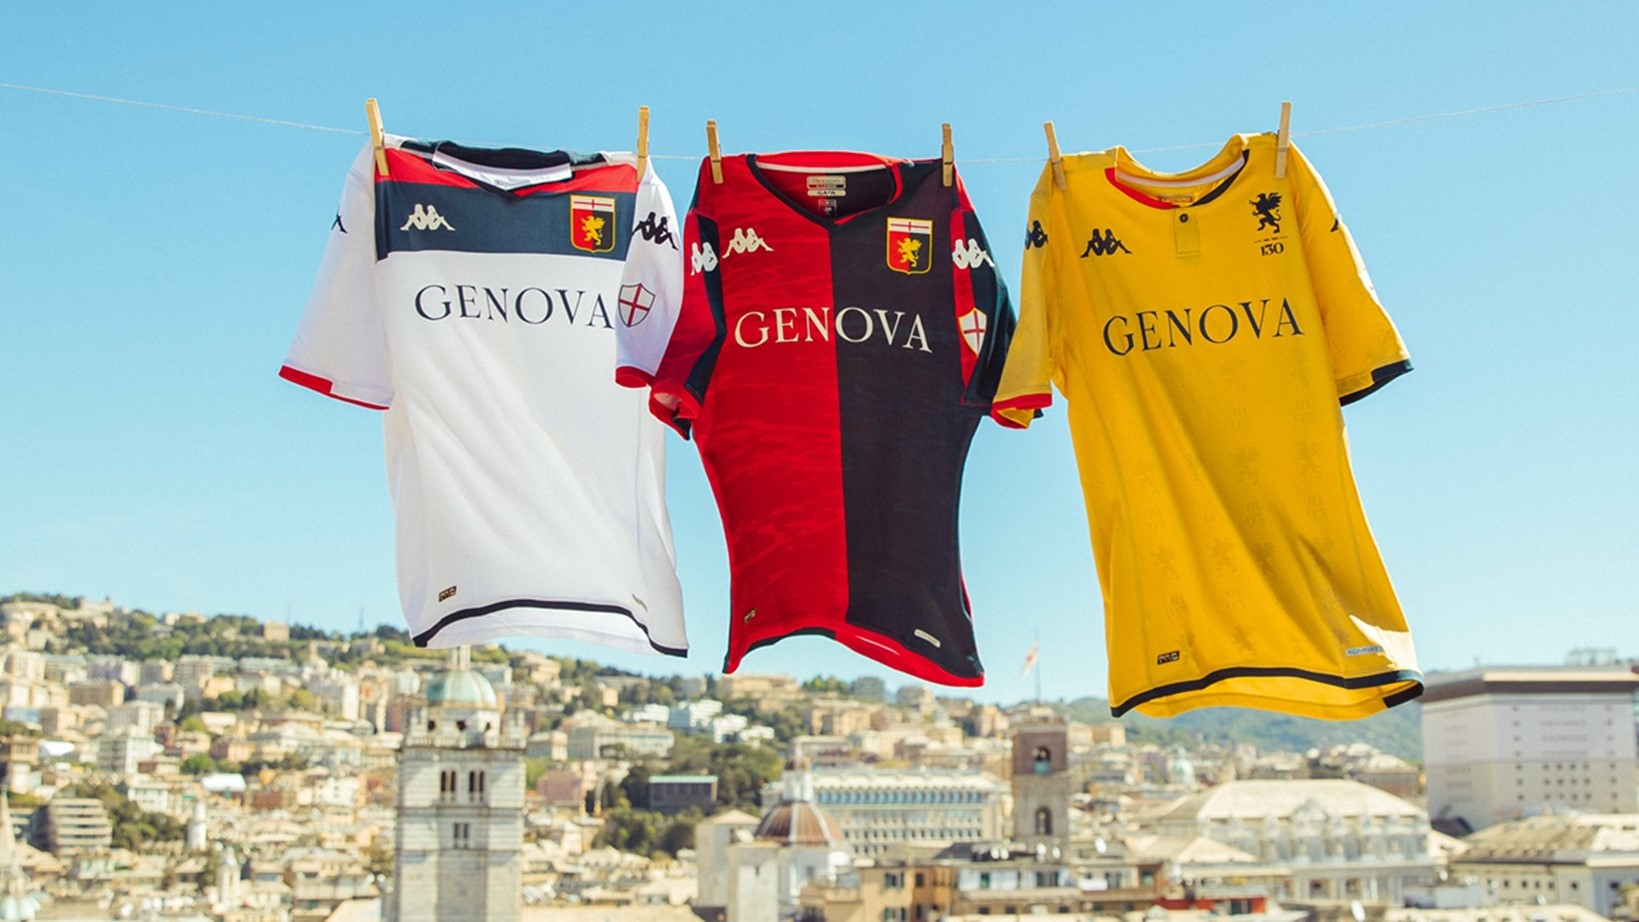 Nuova maglia Genoa